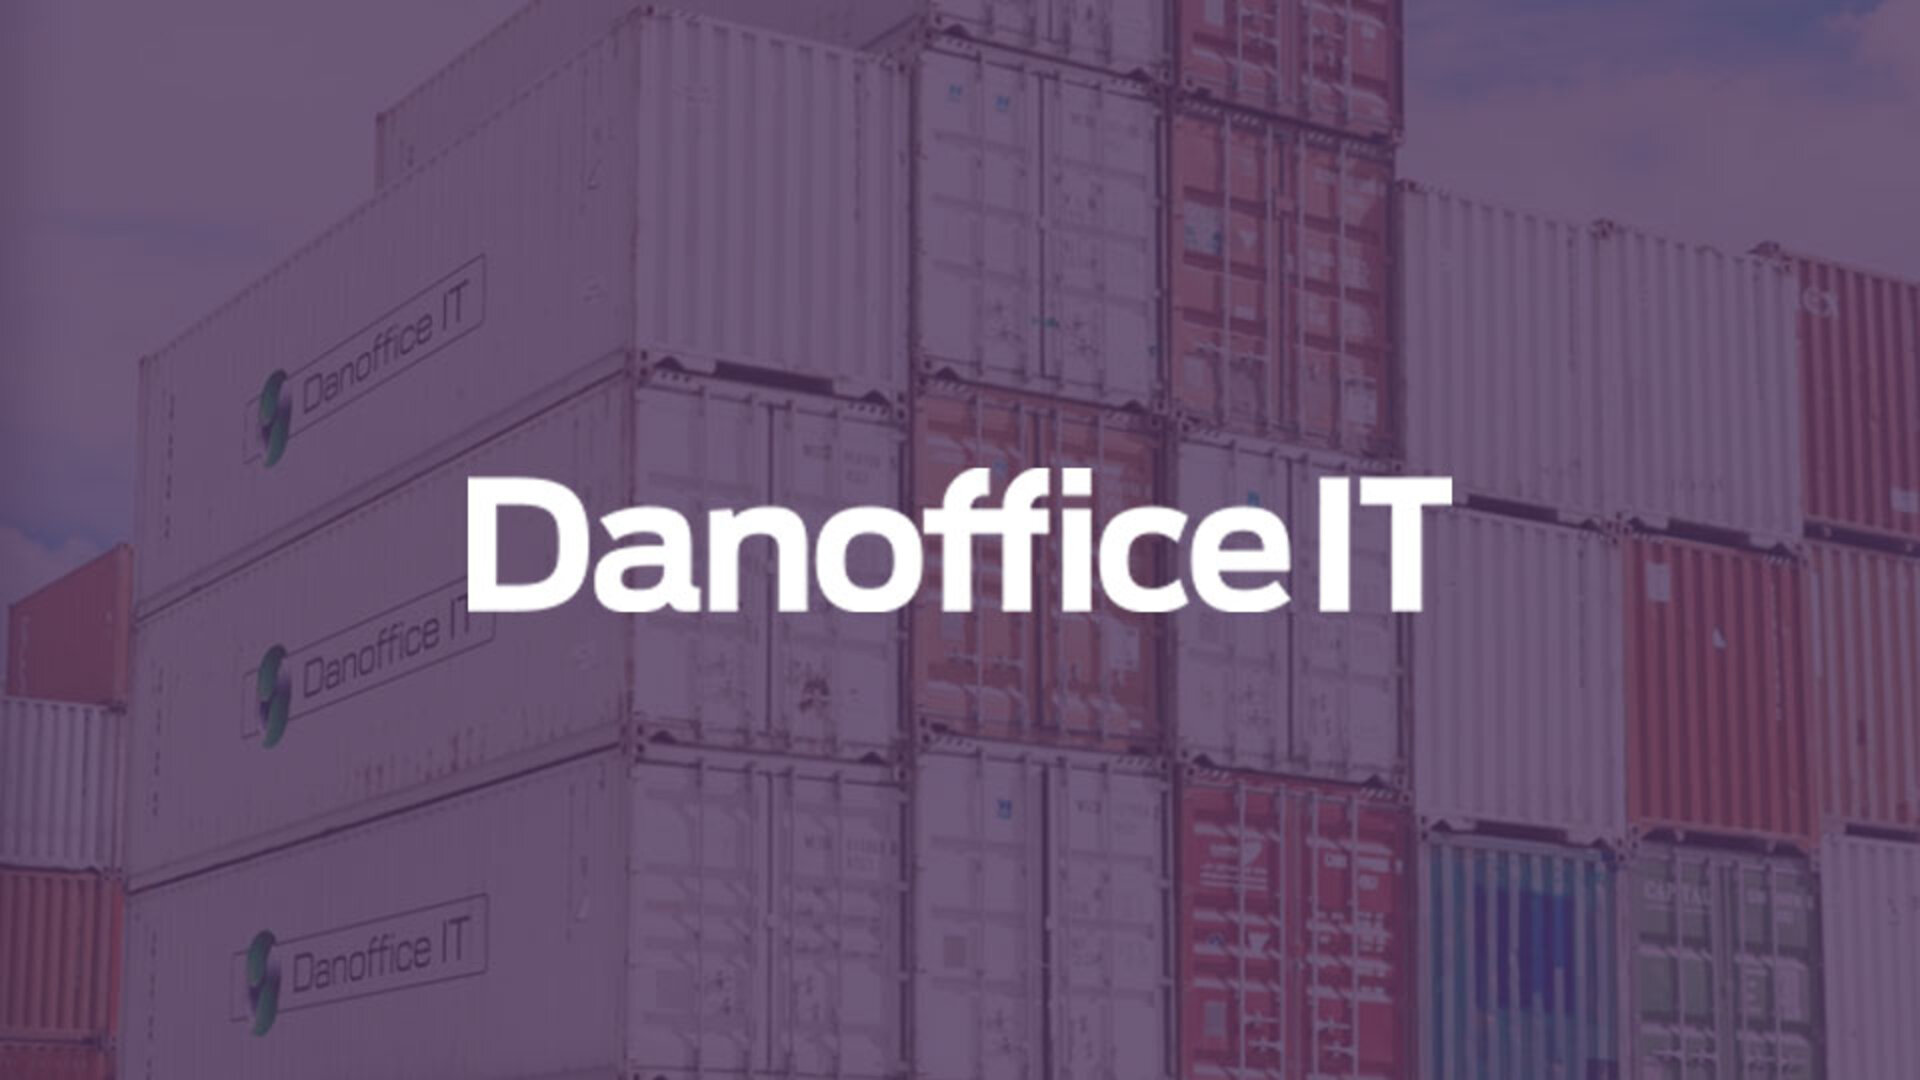 DanOfficeIT - ny kundeportal med fokus på overblik